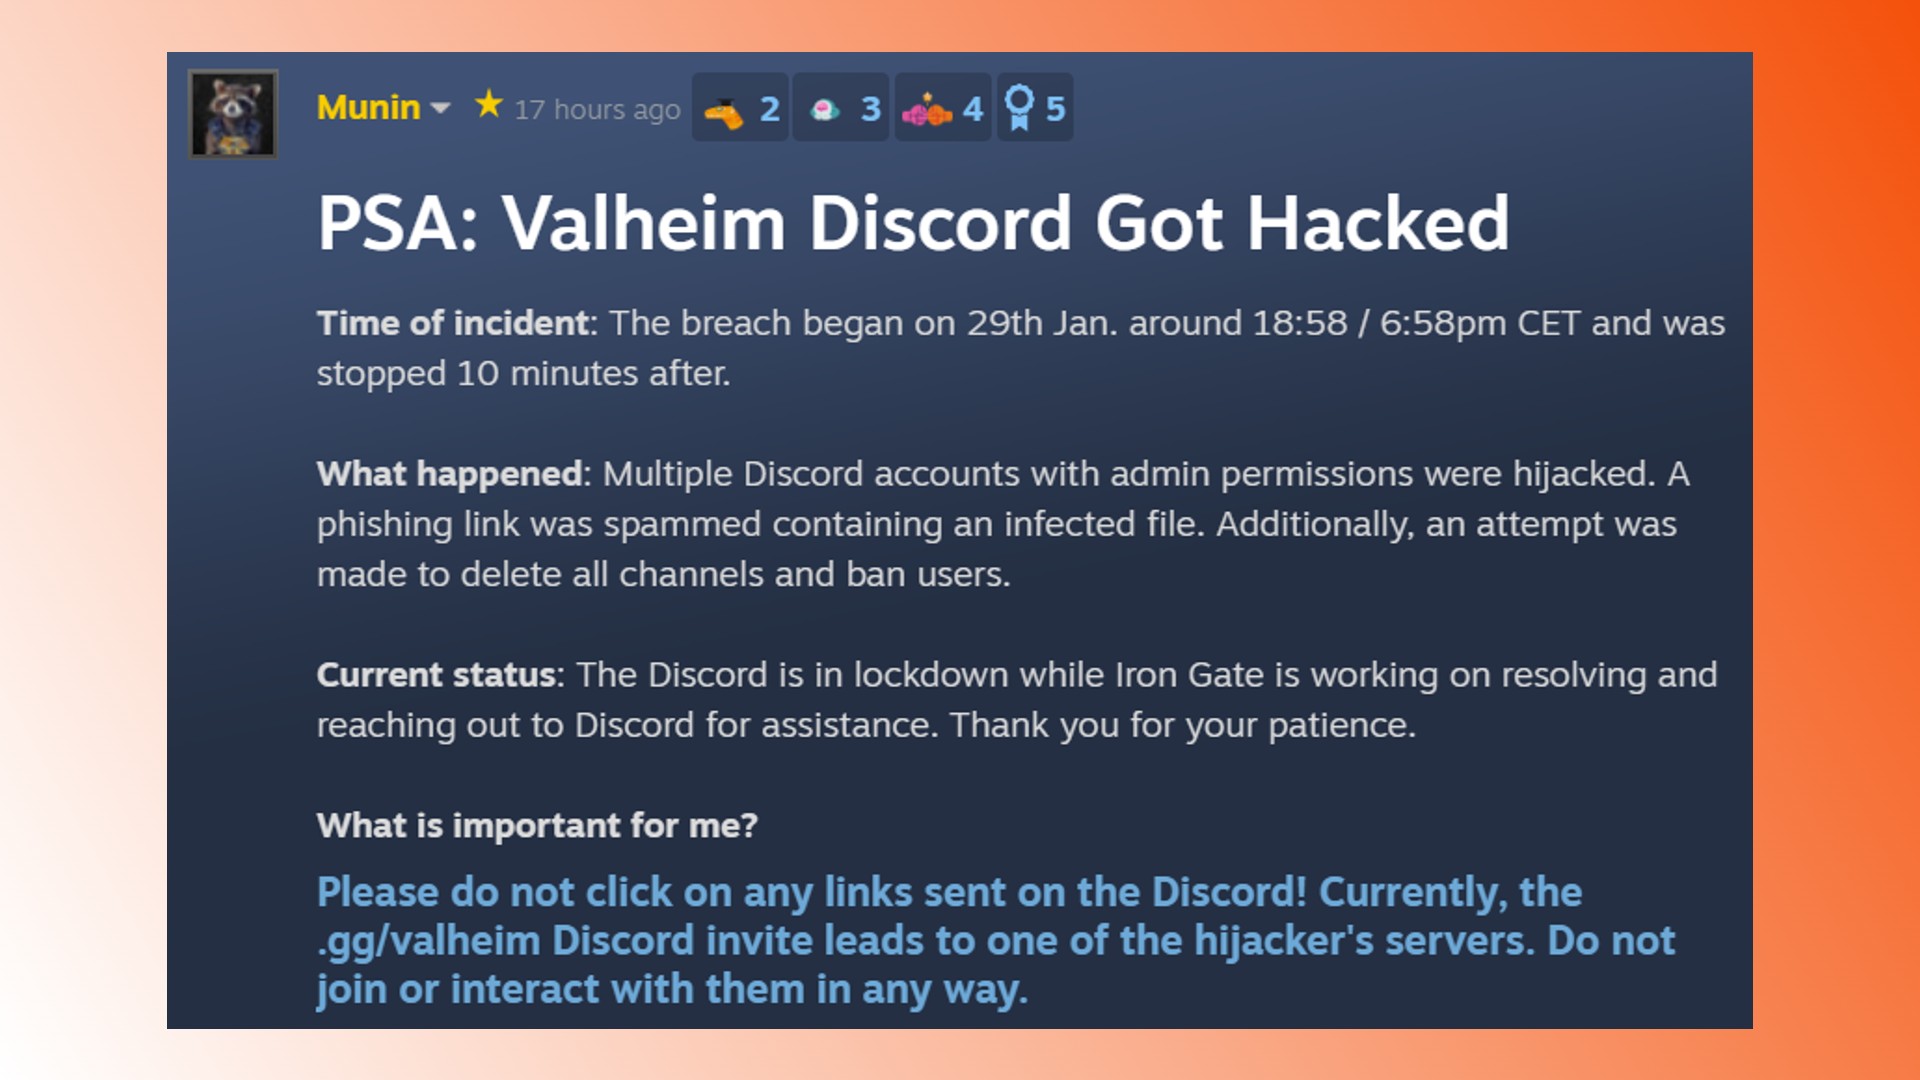 Valheim Discord hacked: A statement from Valheim publisher Coffee Stain